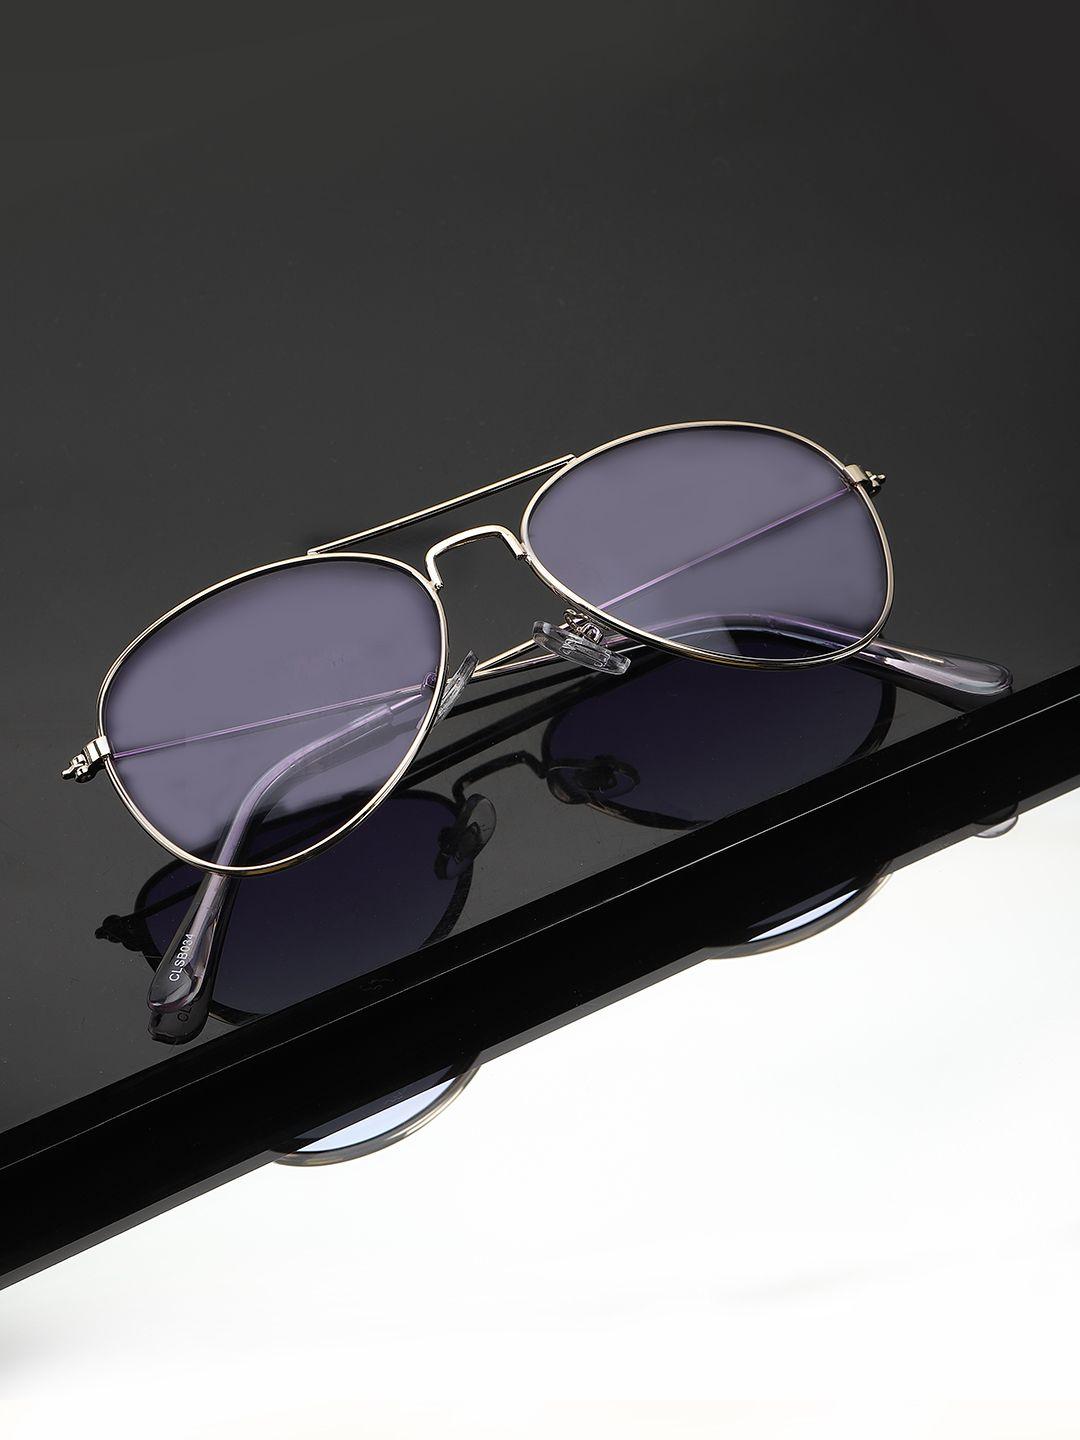 carlton london boys purple lens & gold-toned aviator sunglasses clsb034